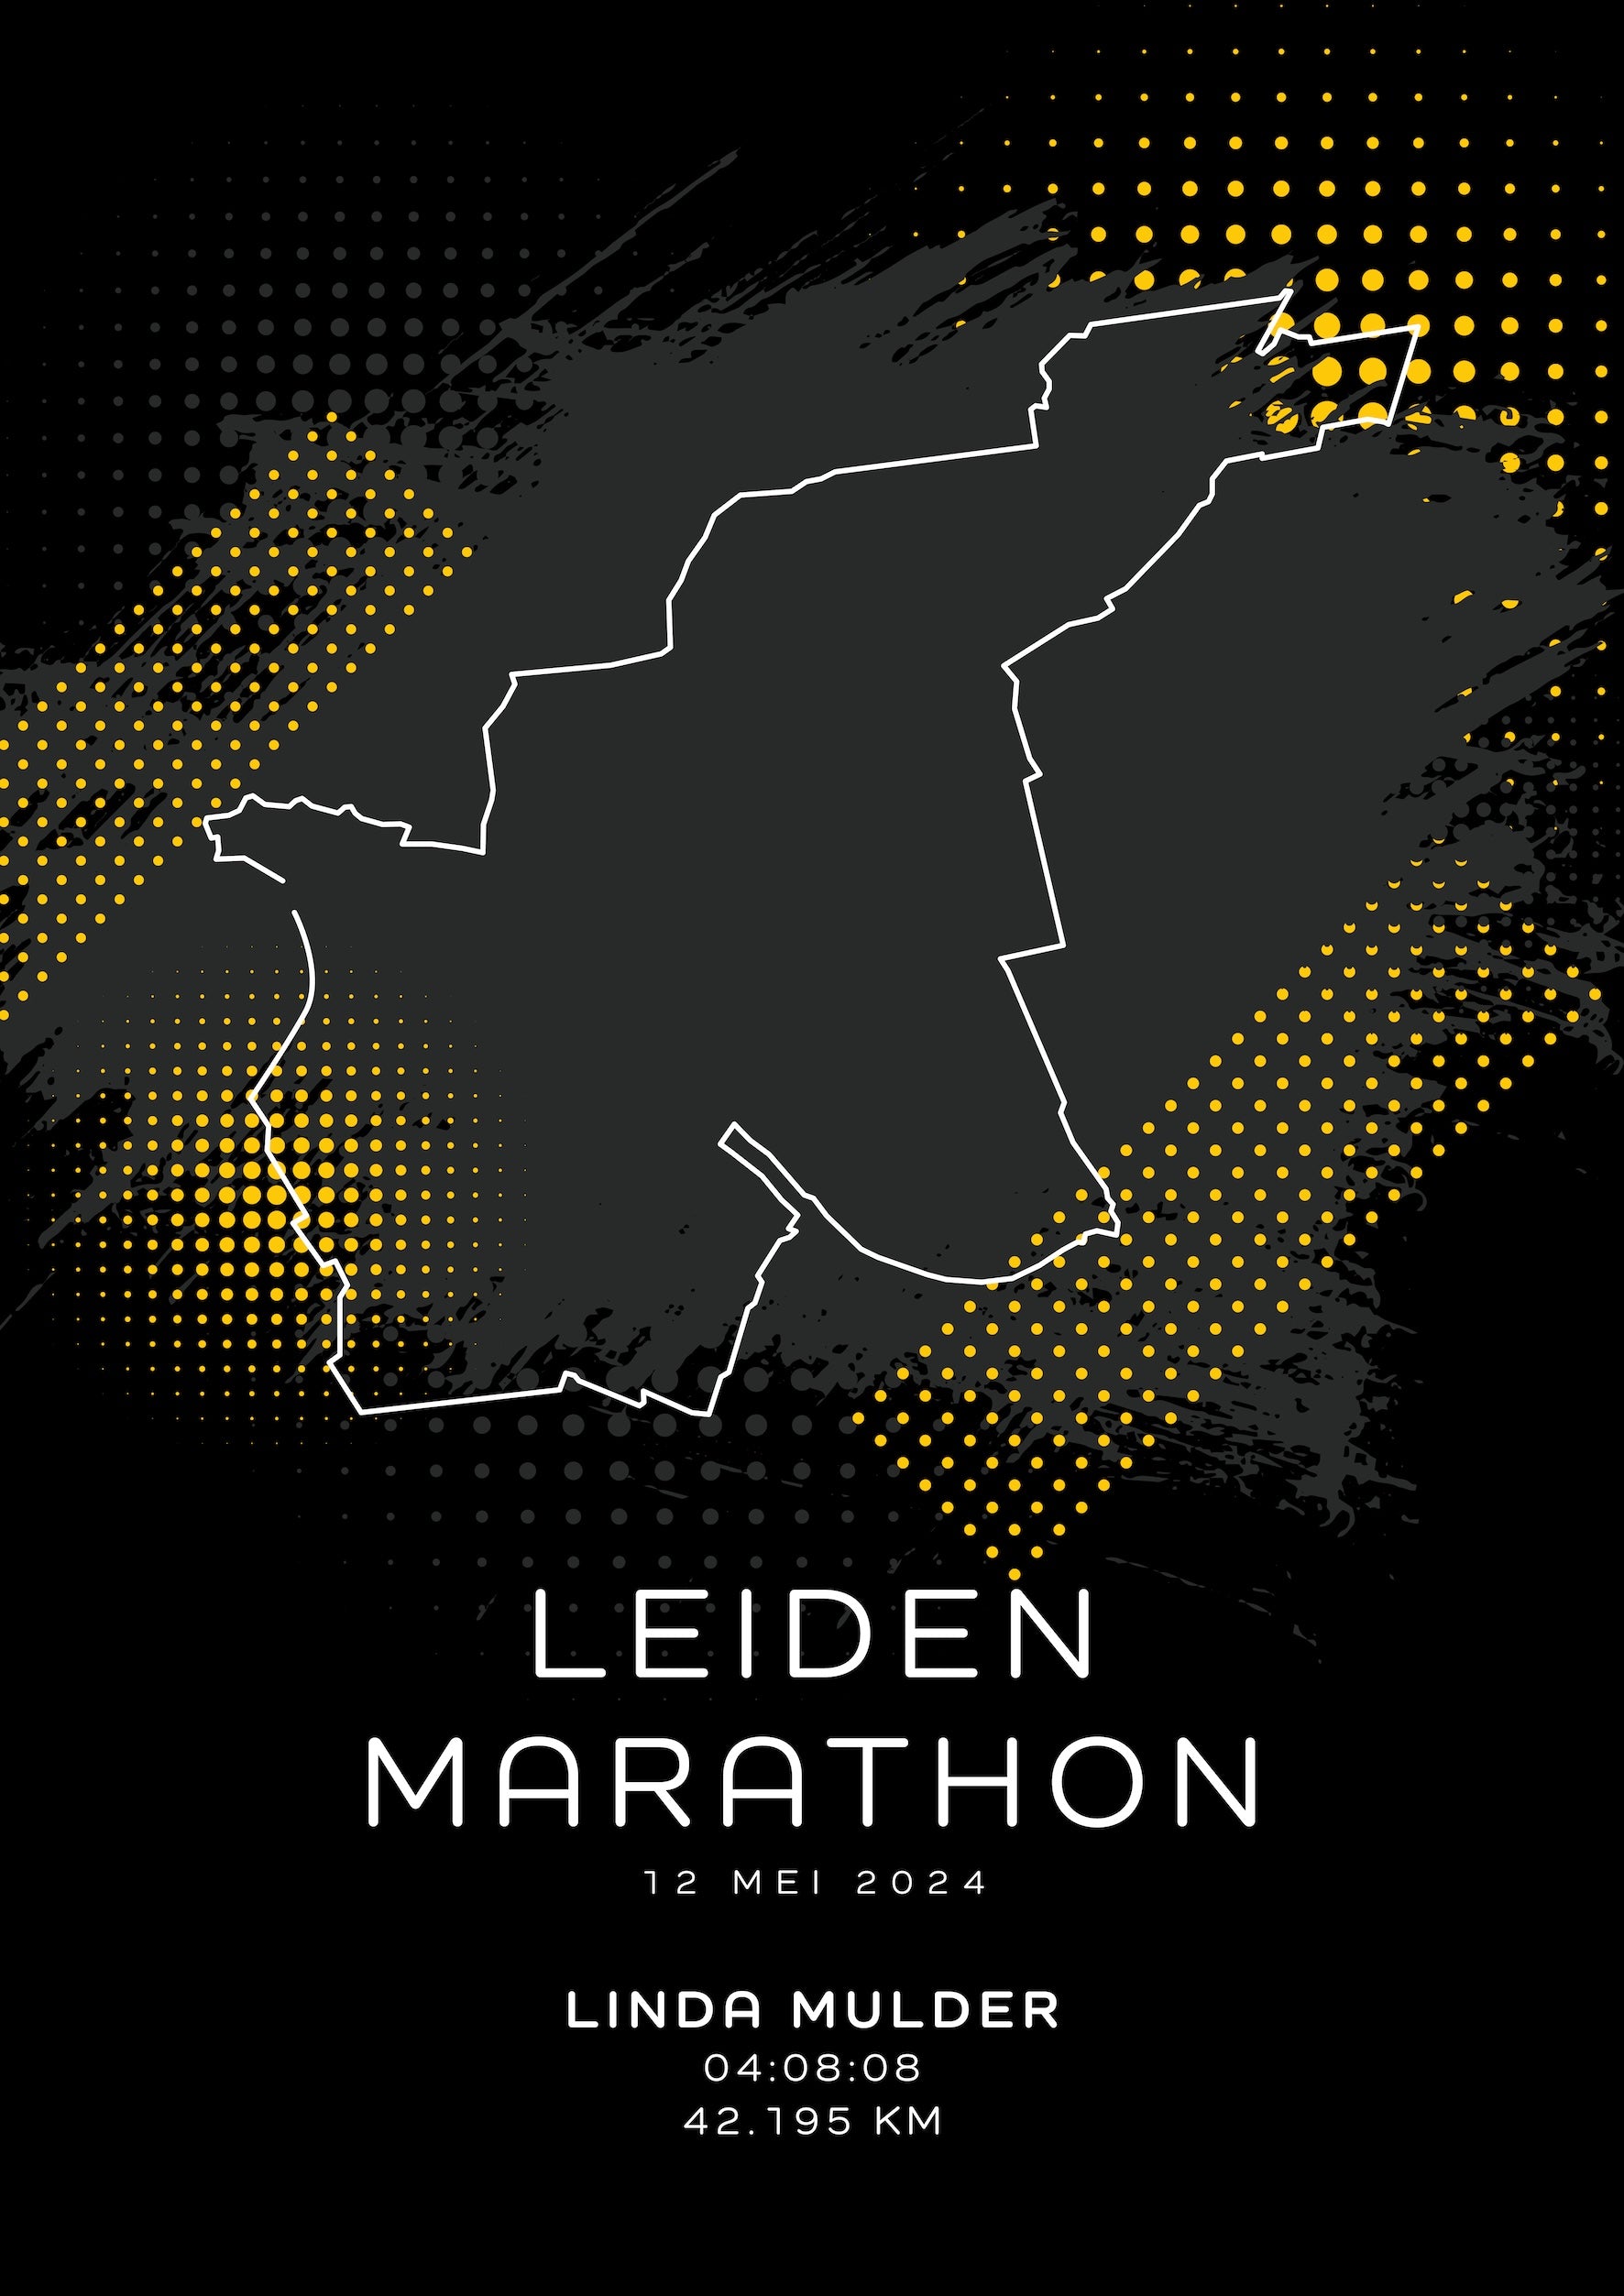 Leiden Marathon - Modern Dark - Poster